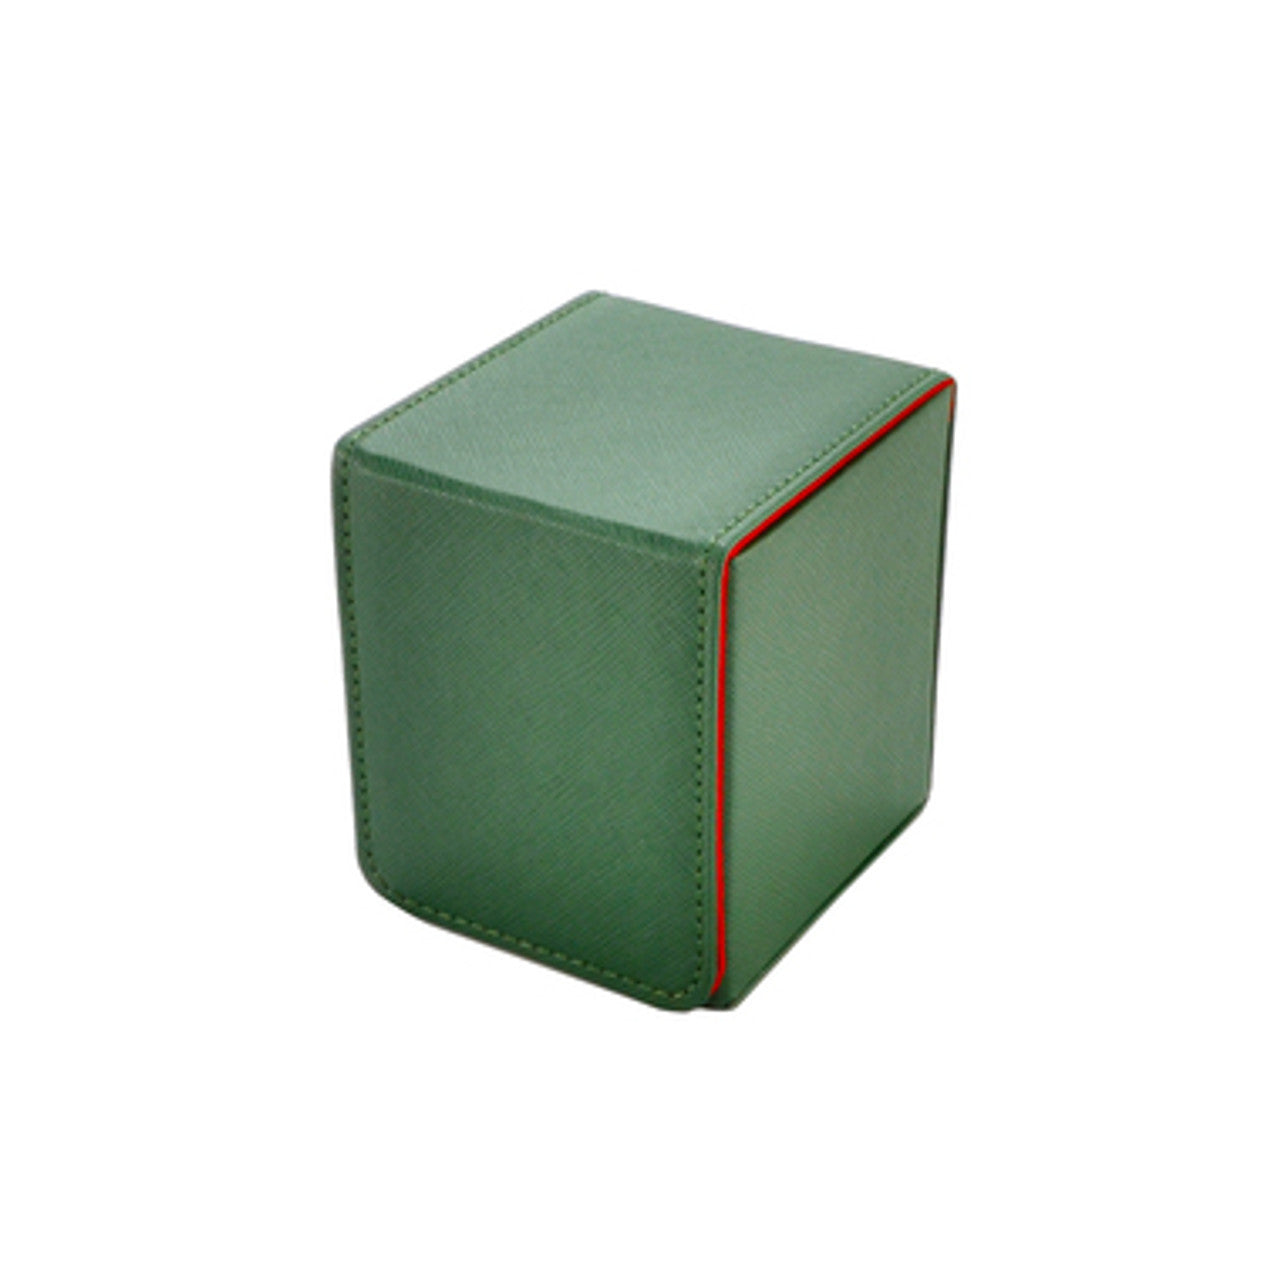 Creation-line Deckbox Small - Green | Grognard Games